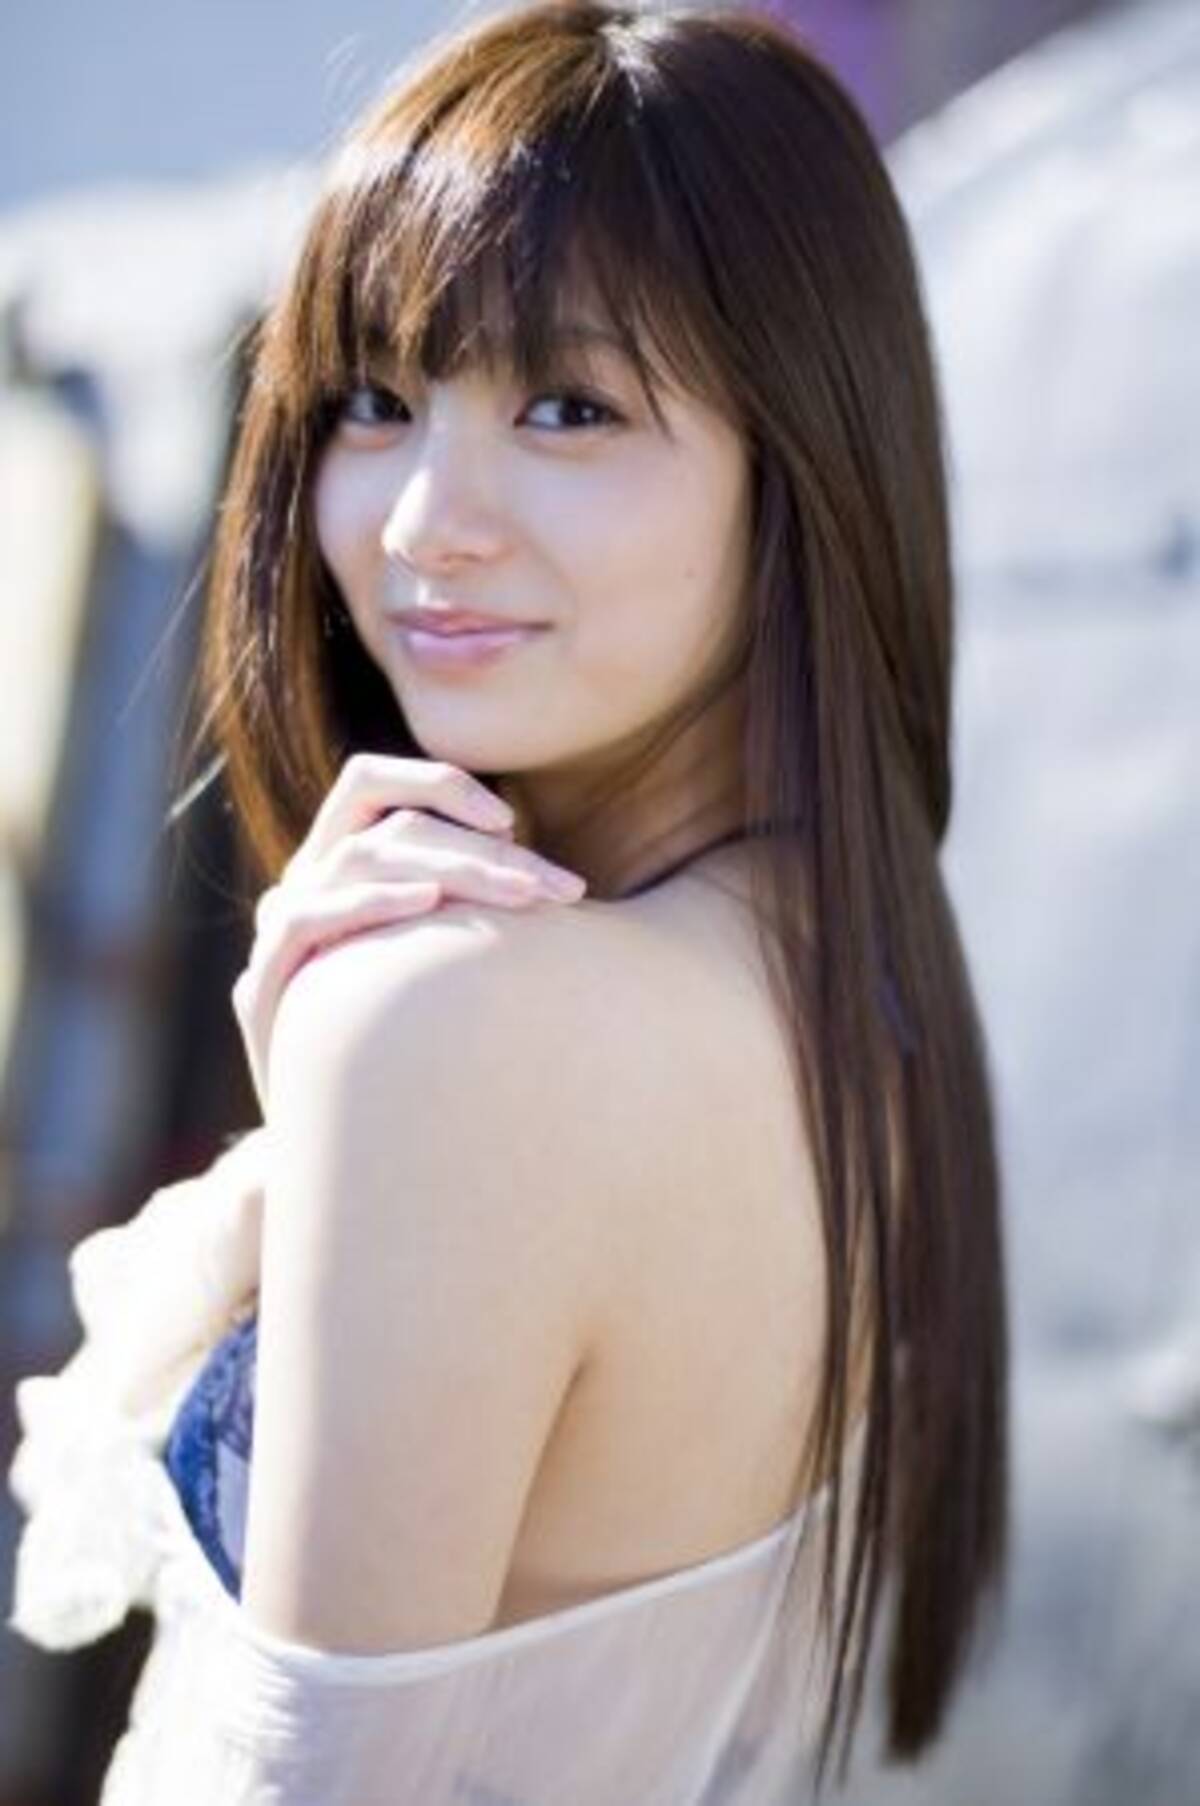 モデル、女優として輝きを放つ新川優愛の「かわいすぎる水着姿」がお宝すぎる (2012年12月19日) - エキサイトニュース